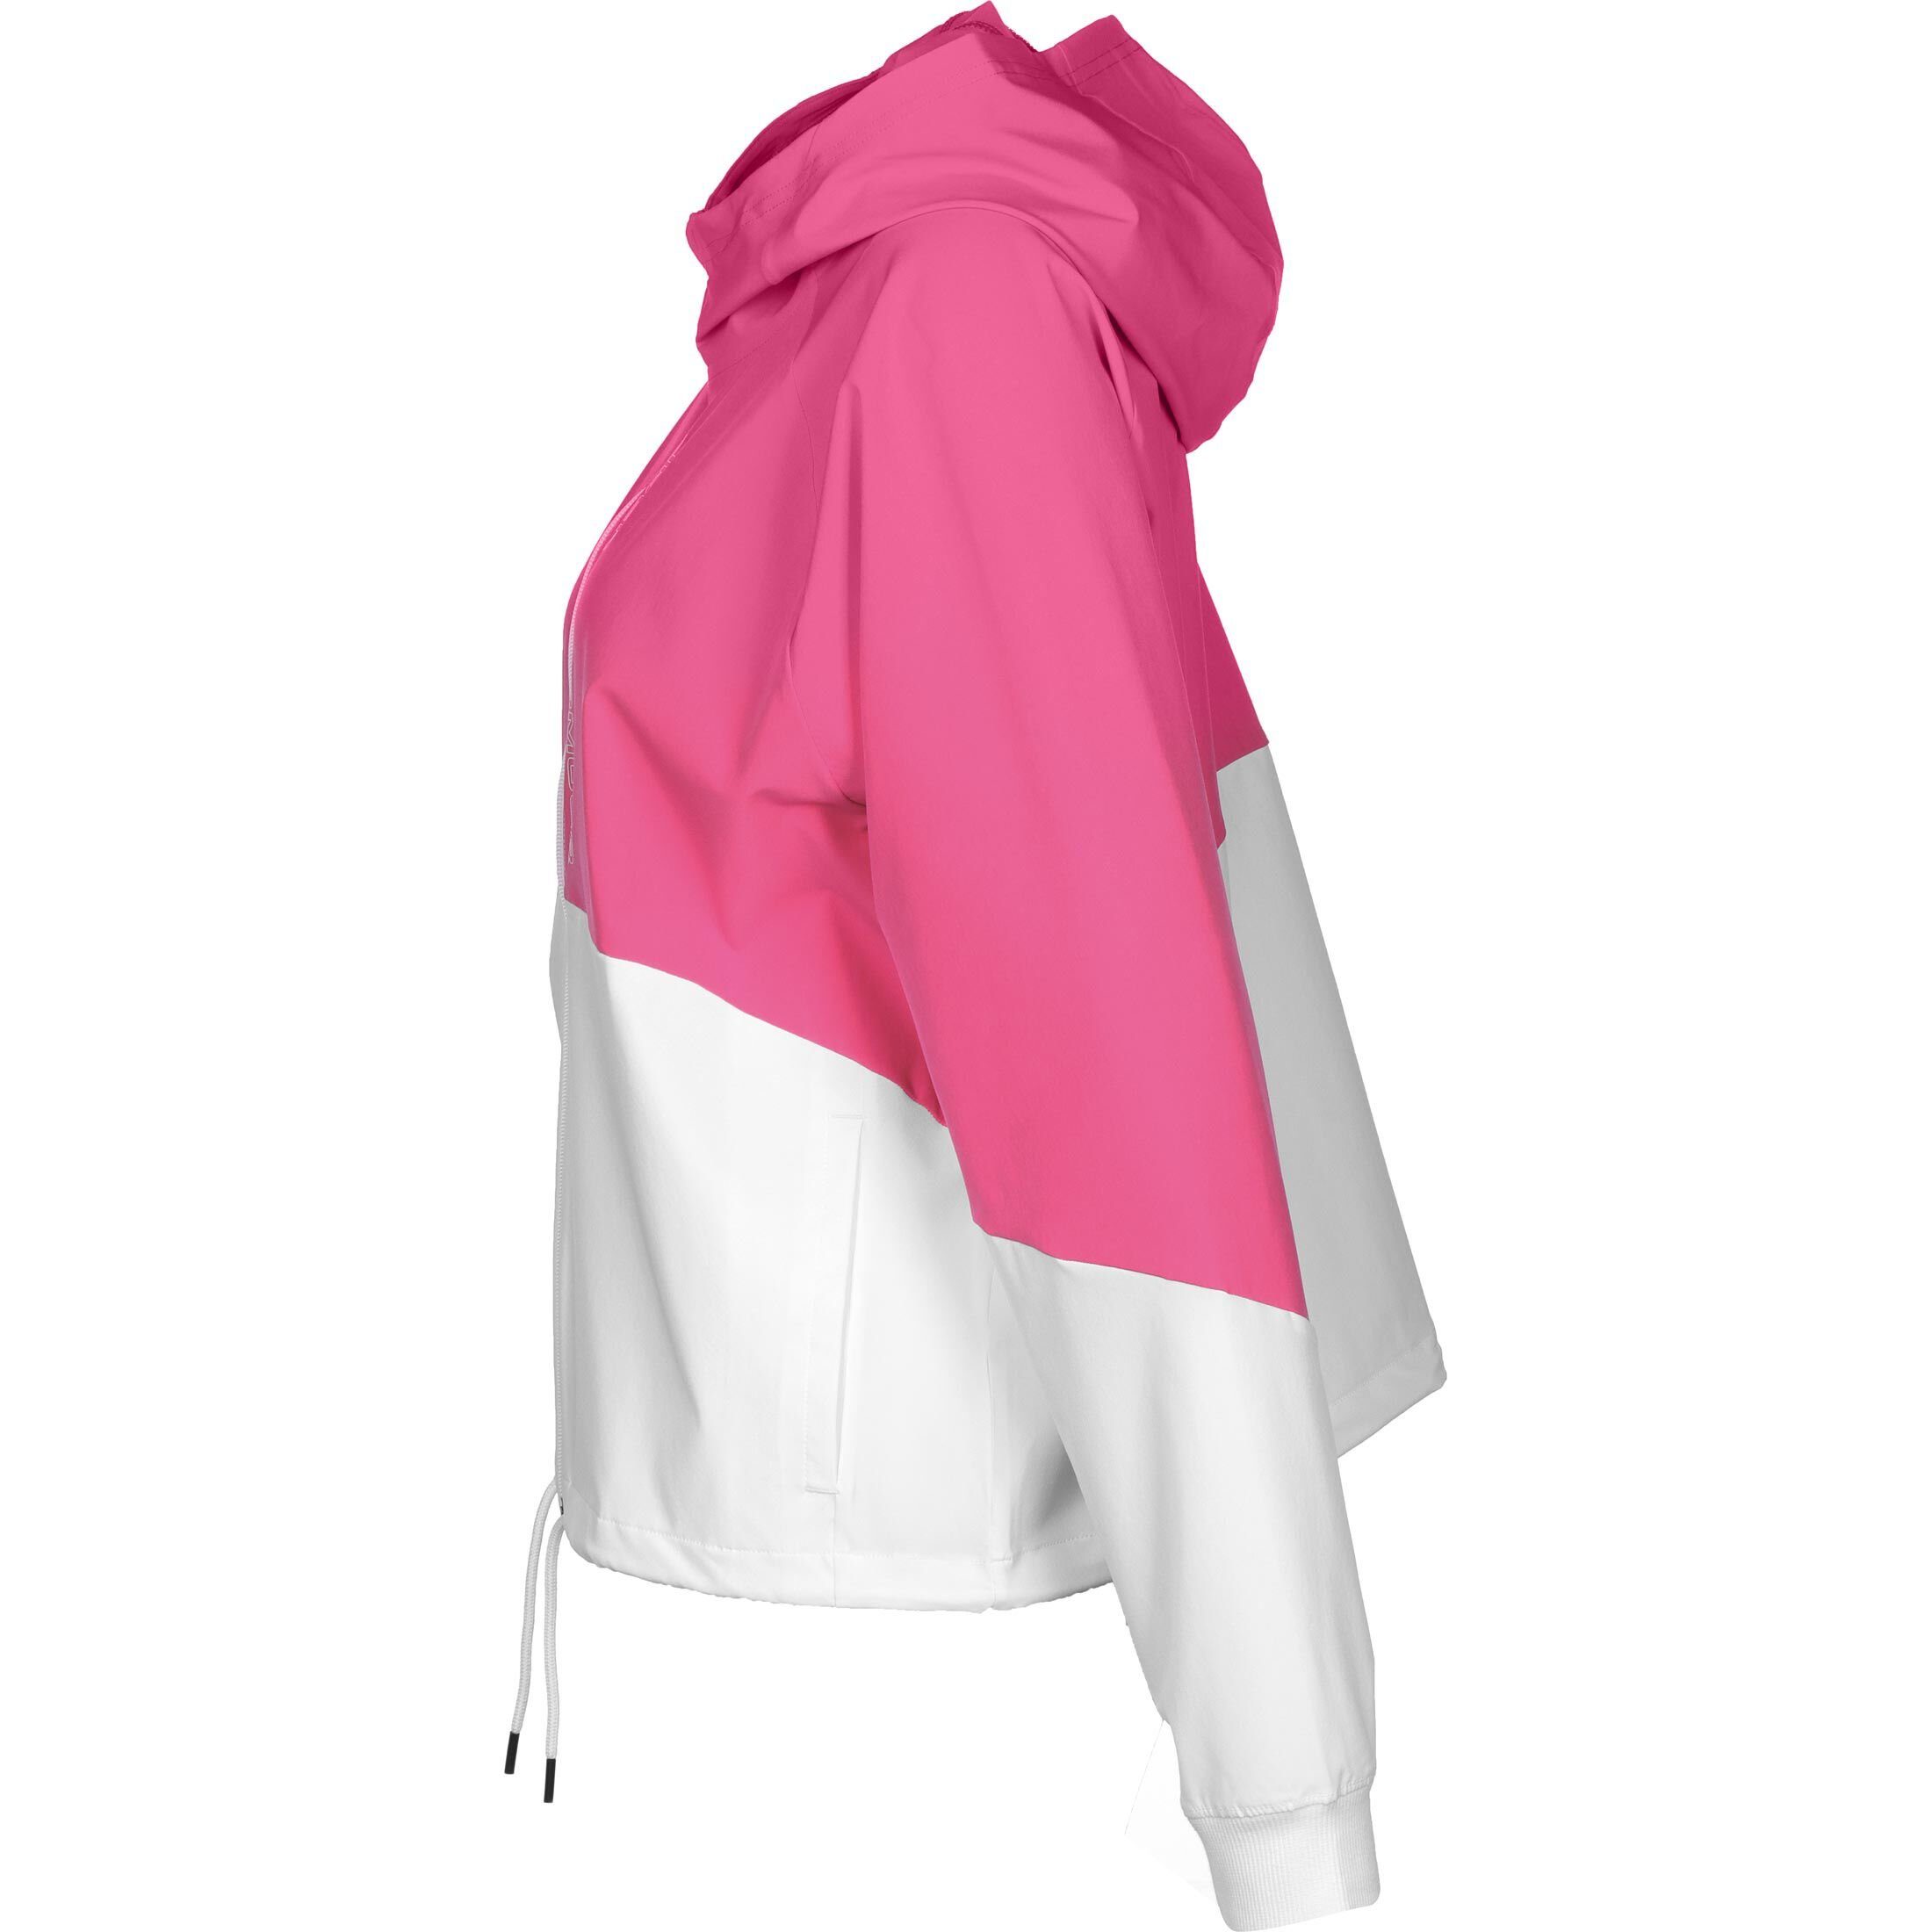 Under Armour® Trainingsjacke pink Woven / Damen Jacke weiß